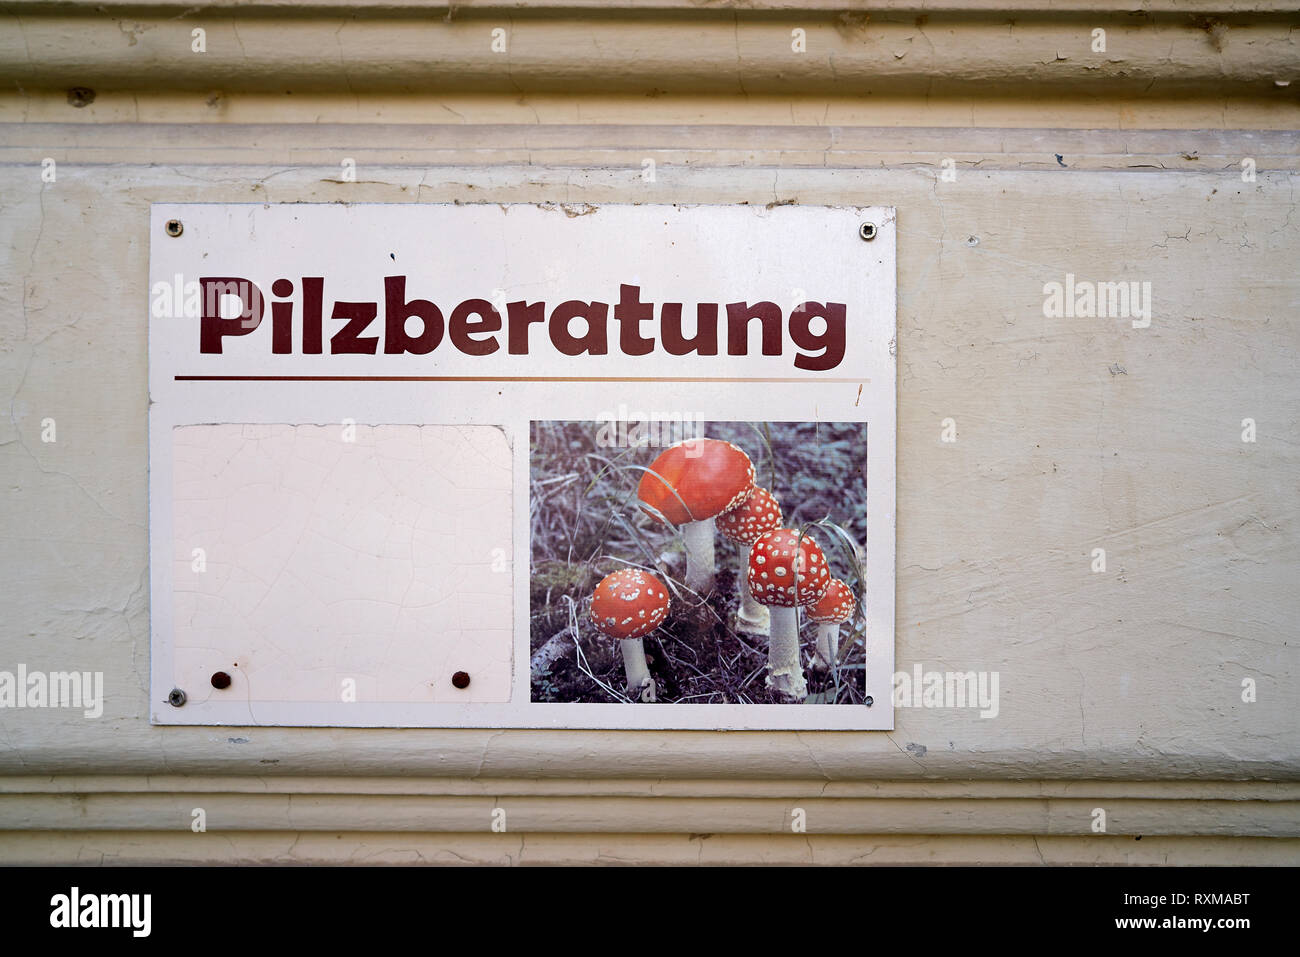 Mushroom Advice Center in Quedlinburg in Germany Stock Photo